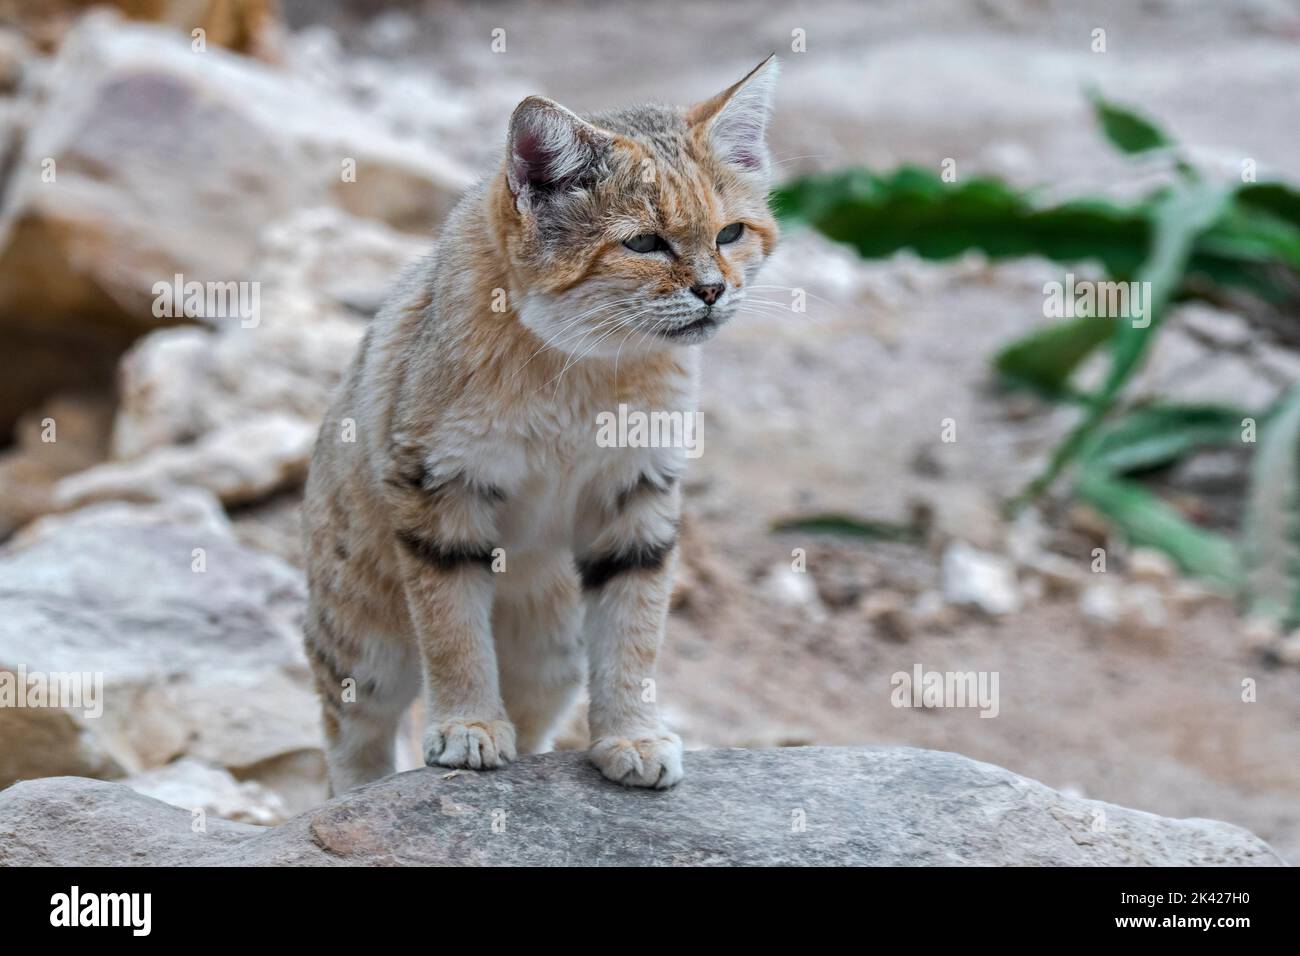 Gatto di sabbia (Felis margarita), gatto selvatico originario dei deserti sabbiosi e rocciosi del Nord Africa, della Penisola Araba, del Pakistan e del Medio Oriente Foto Stock